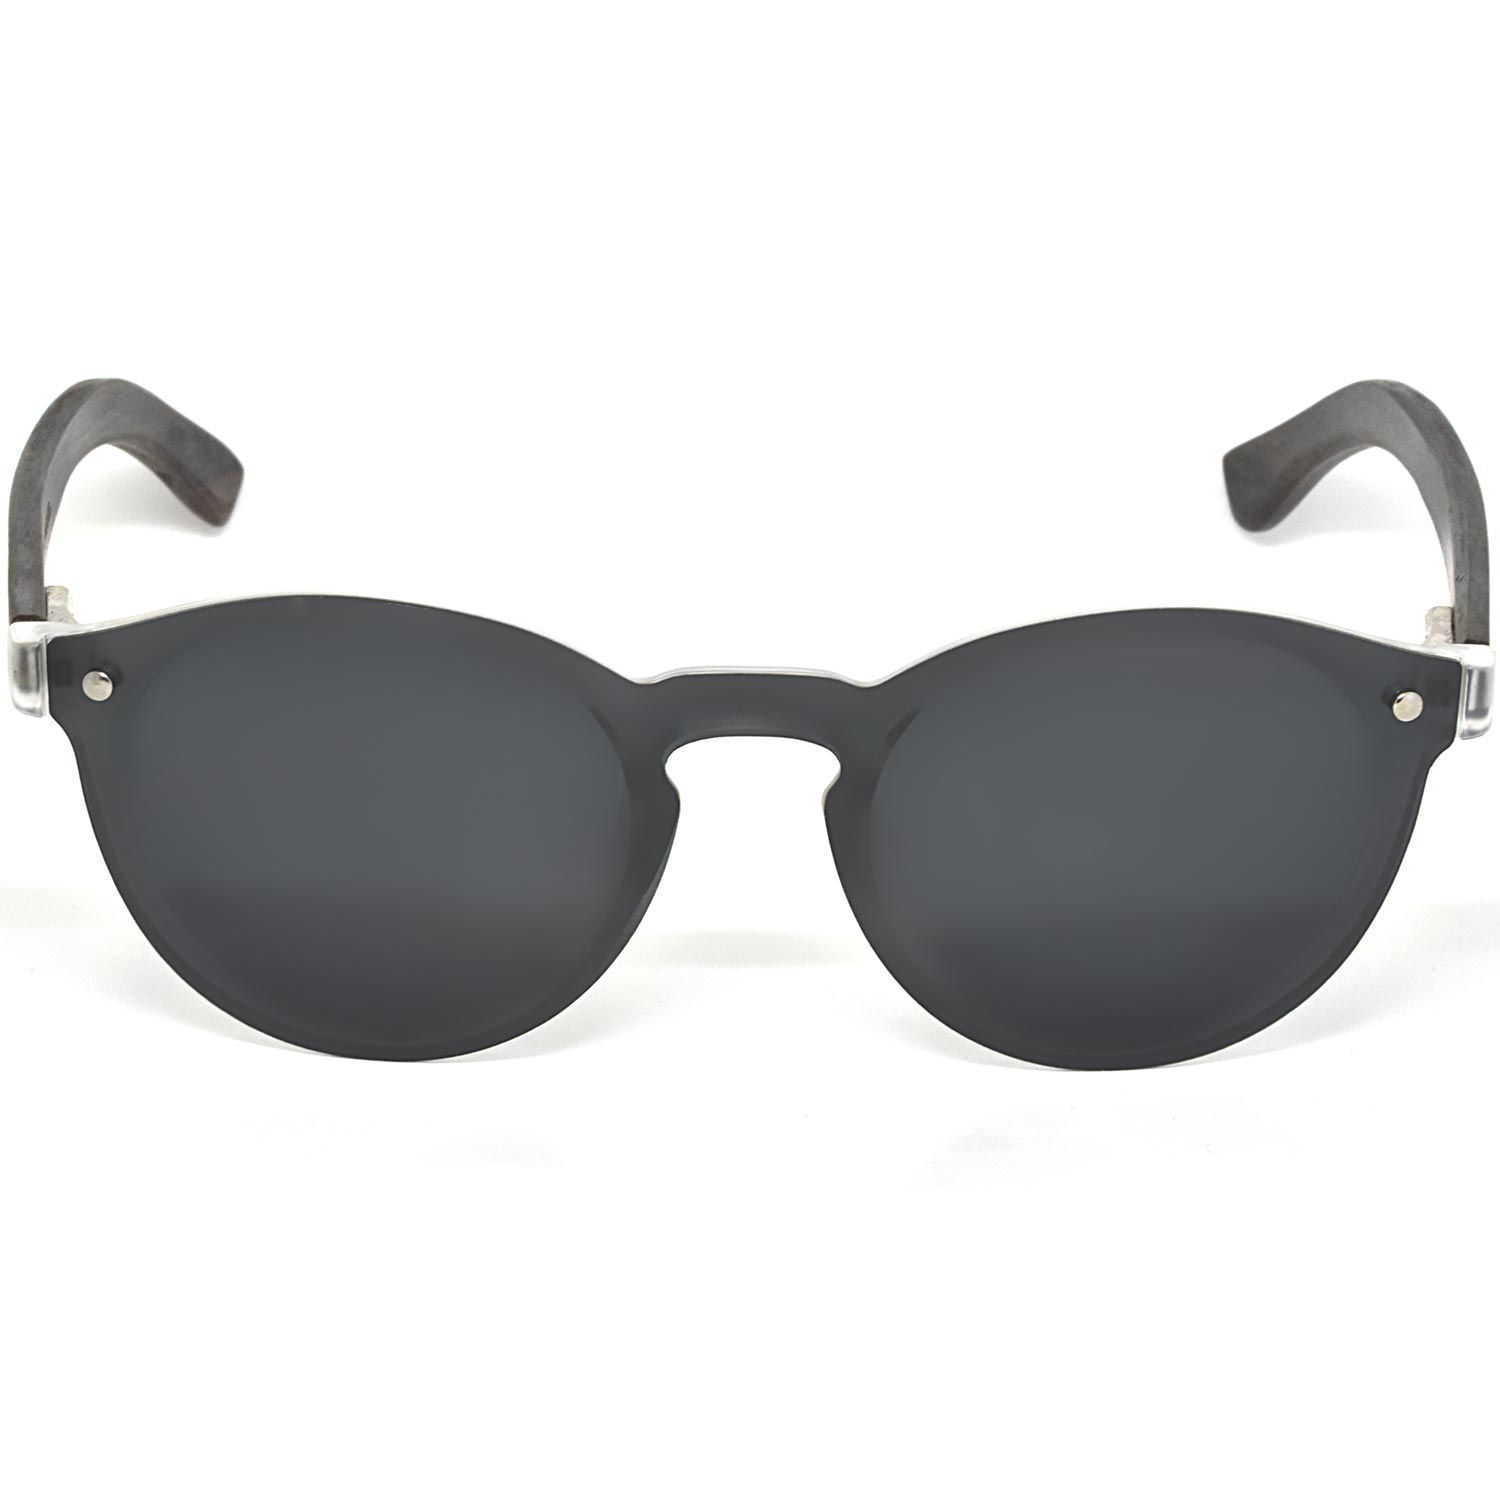 Round ebony wood sunglasses black polarized lenses front